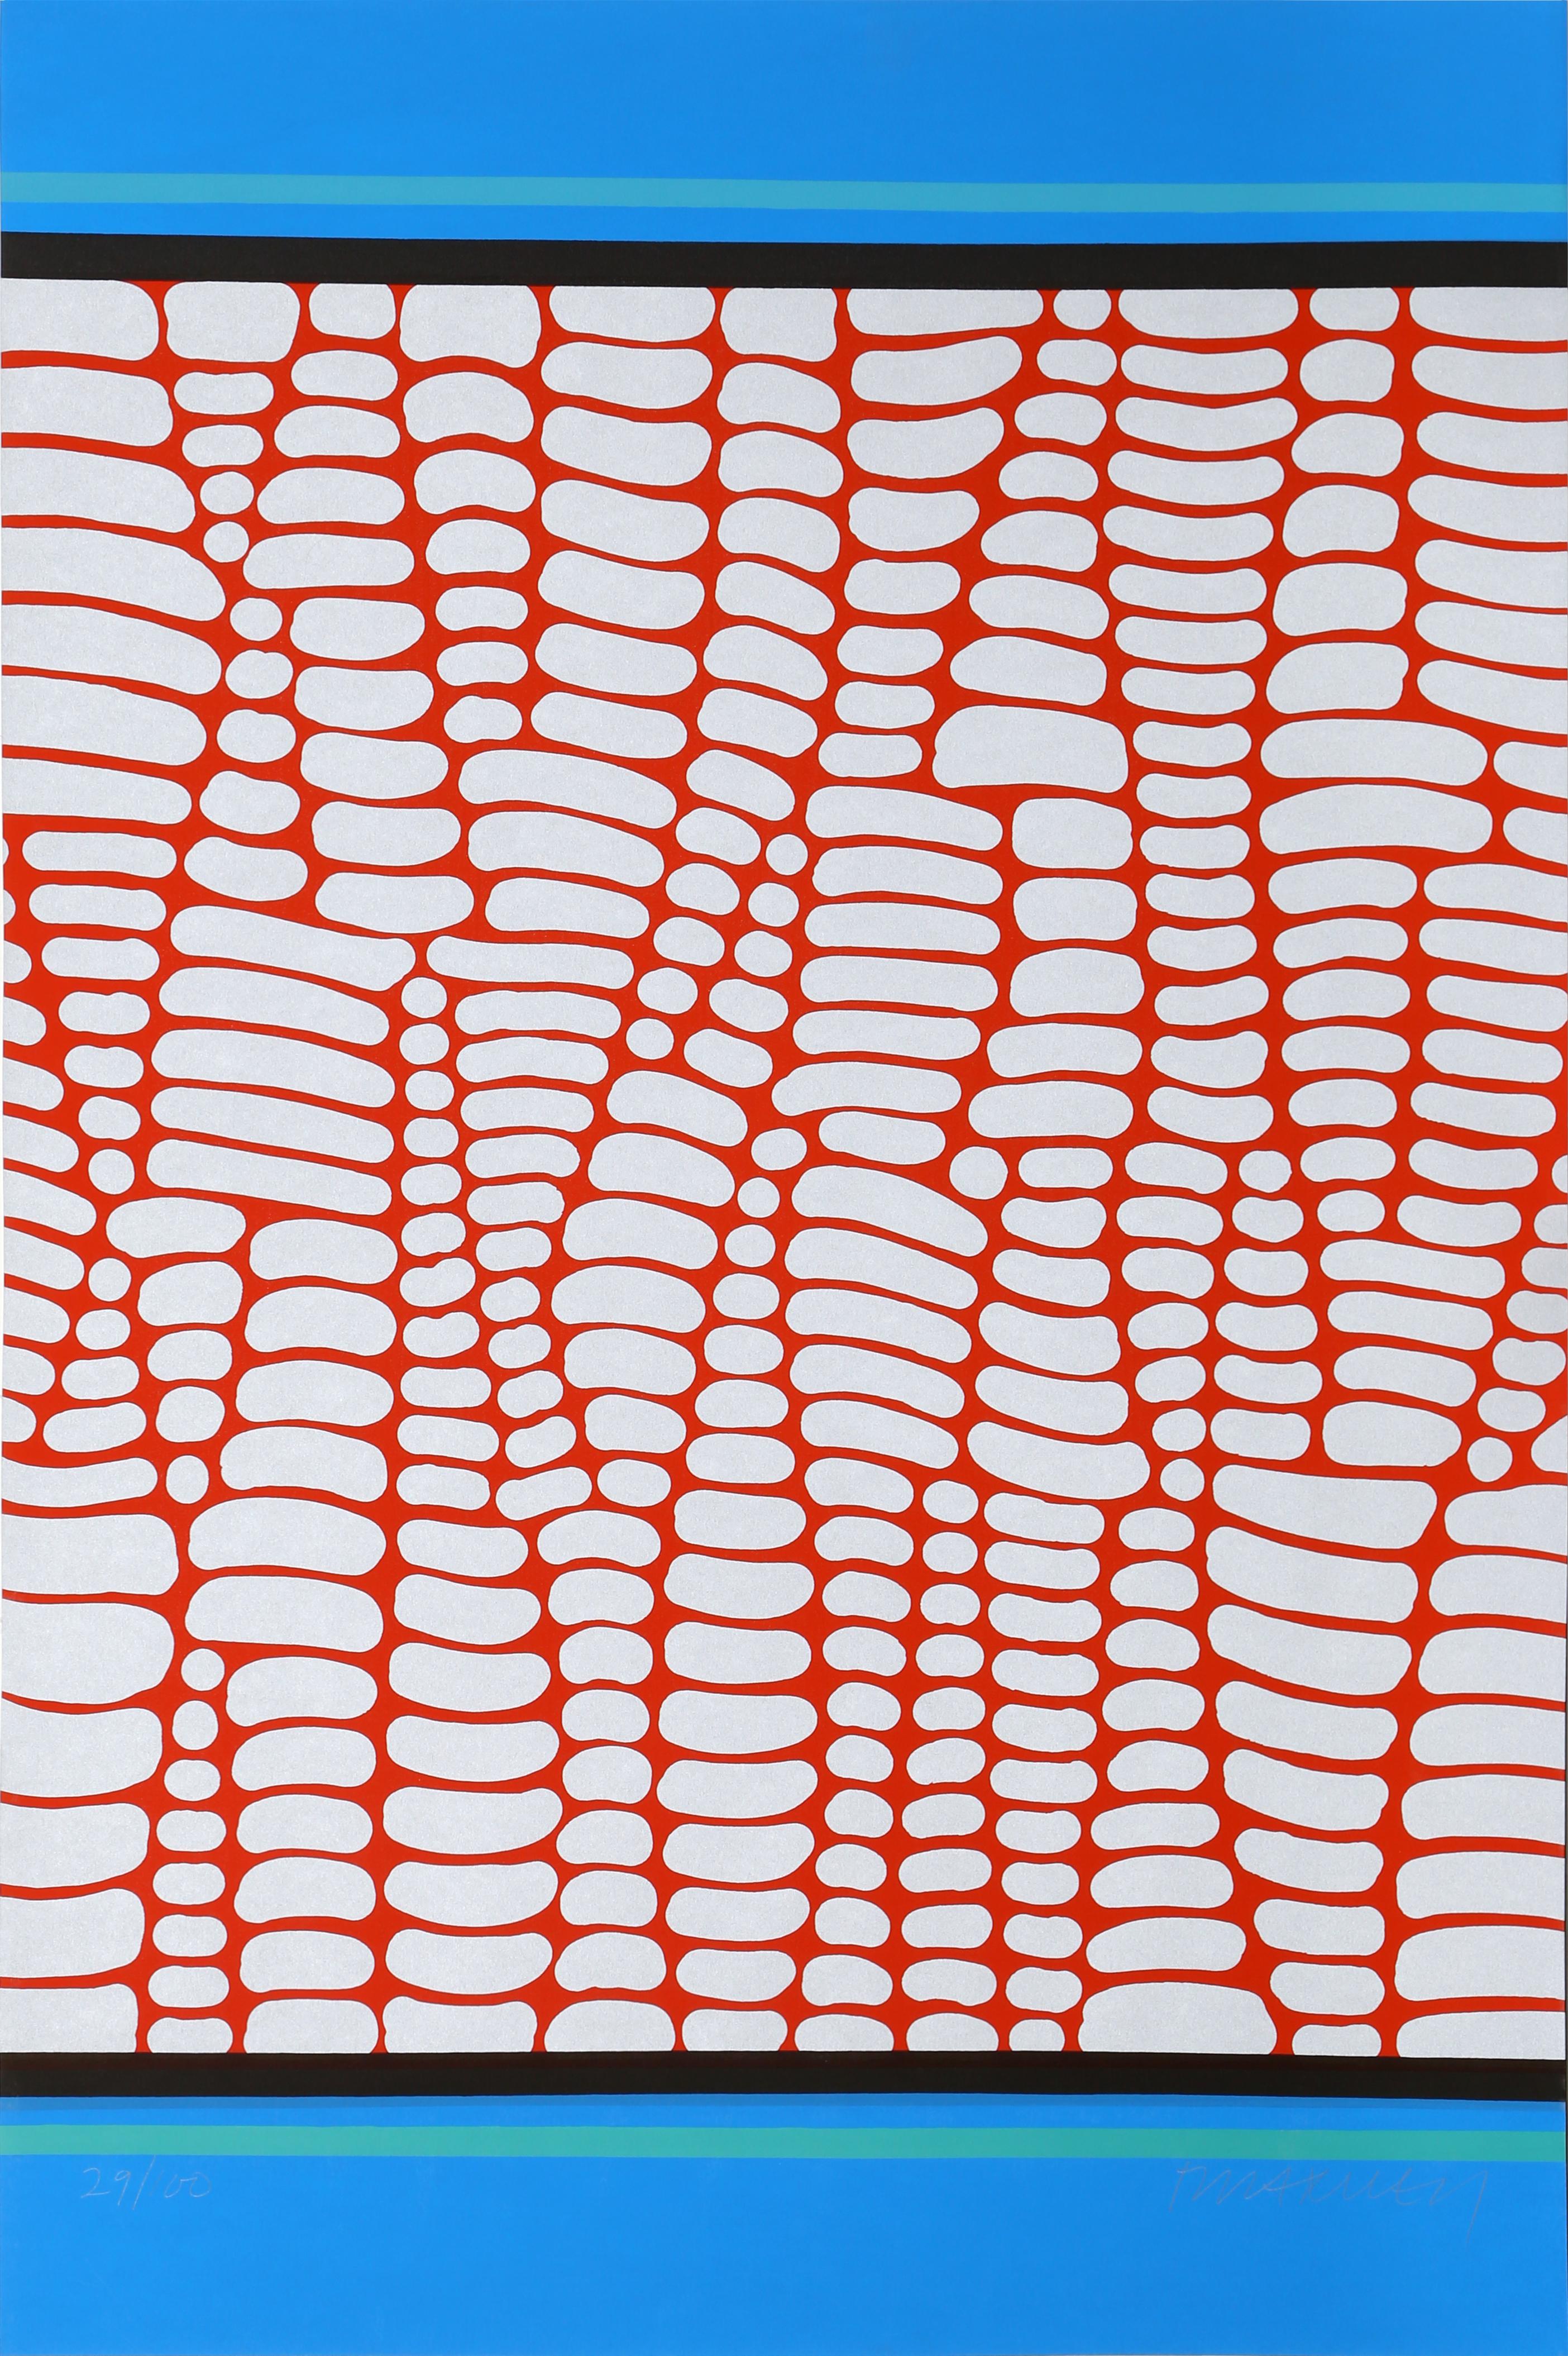 Artiste : Paul Maxwell, américain (1925 - 2015)
Titre : Sans titre - Web rouge et bleu
Année : vers 1978
Médium : Sérigraphie, signée et numérotée au crayon
Edition : 100
Taille : 26 x 39 in. (66,04 x 99,06 cm)